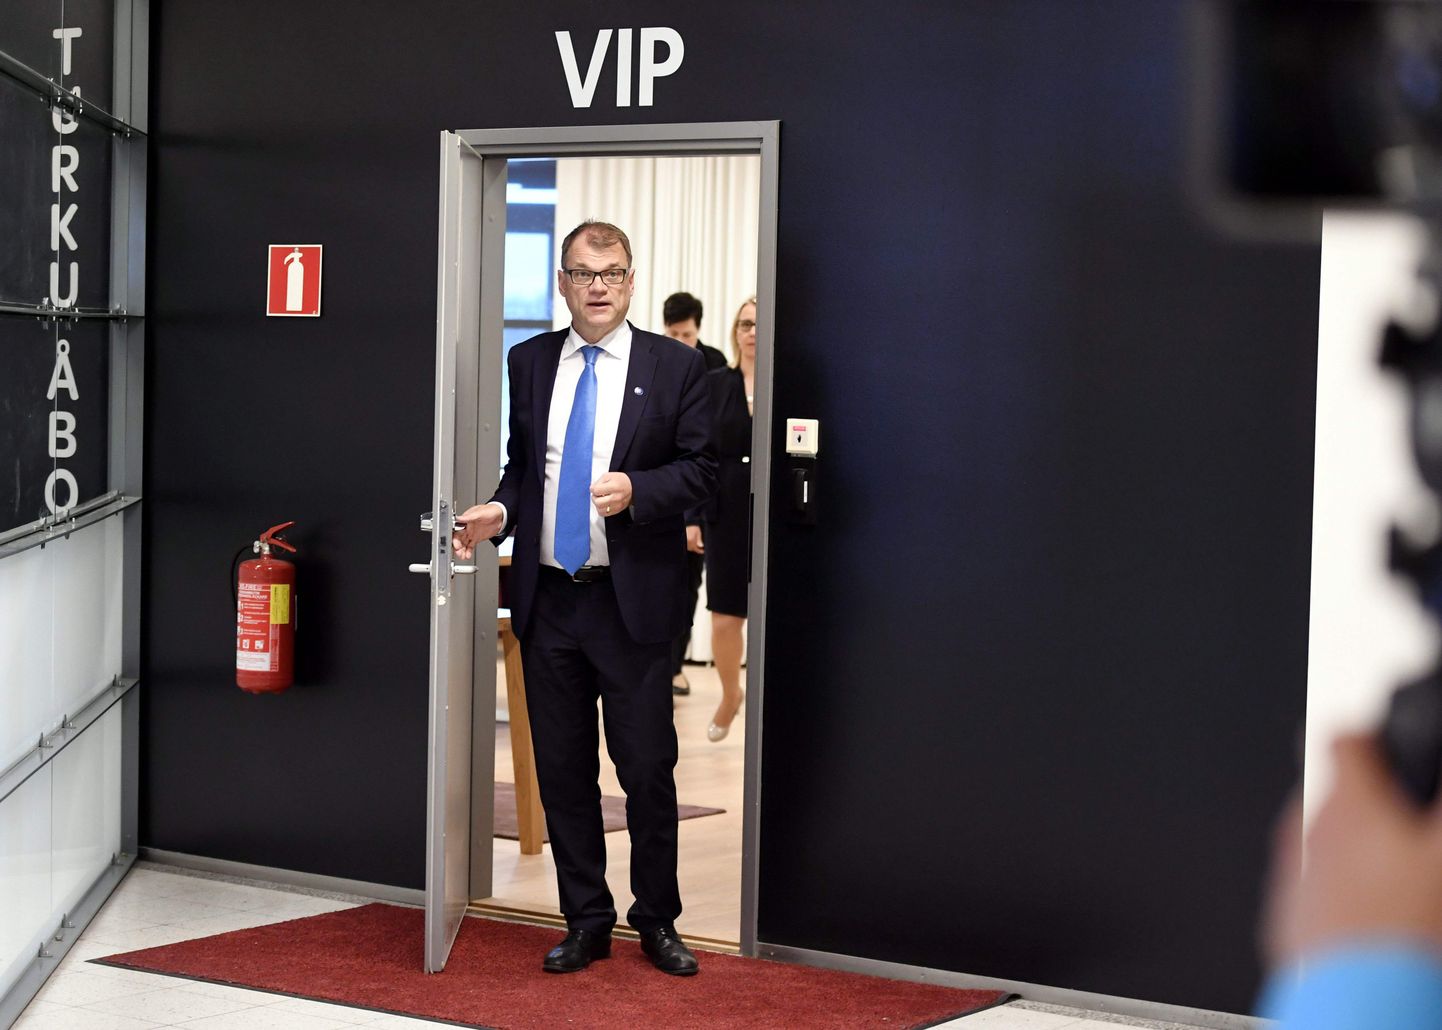 Soome valitsuskriis on lahenenud ning valitsus jätkab senises koosseisus, teatas peaminister Juha Sipilä eile Turu lennujaamas toimunud erakorralisel pressikonverentsil.